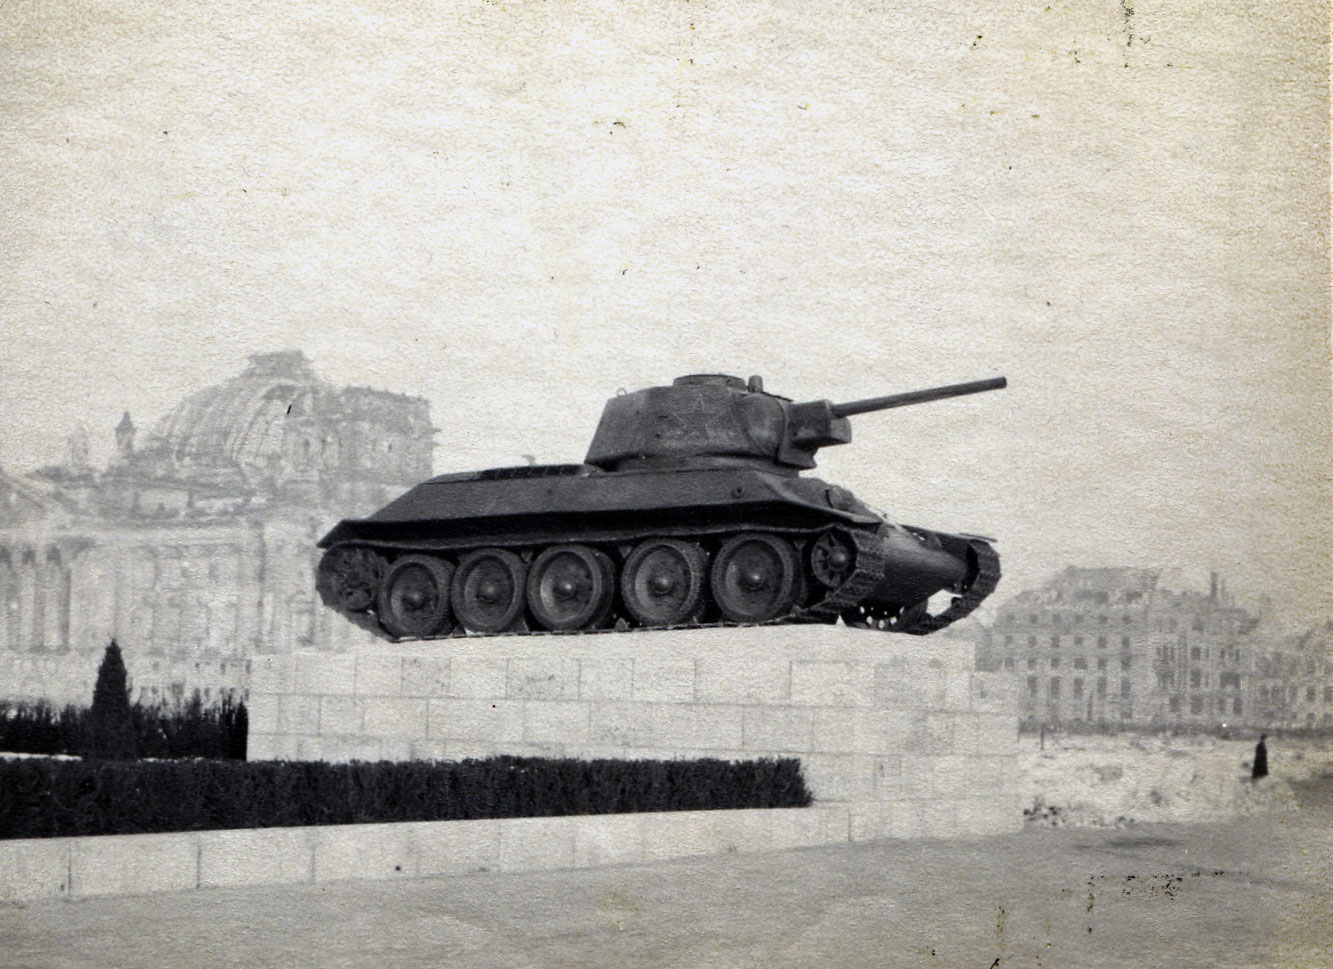 Russian tank on display in Berlin